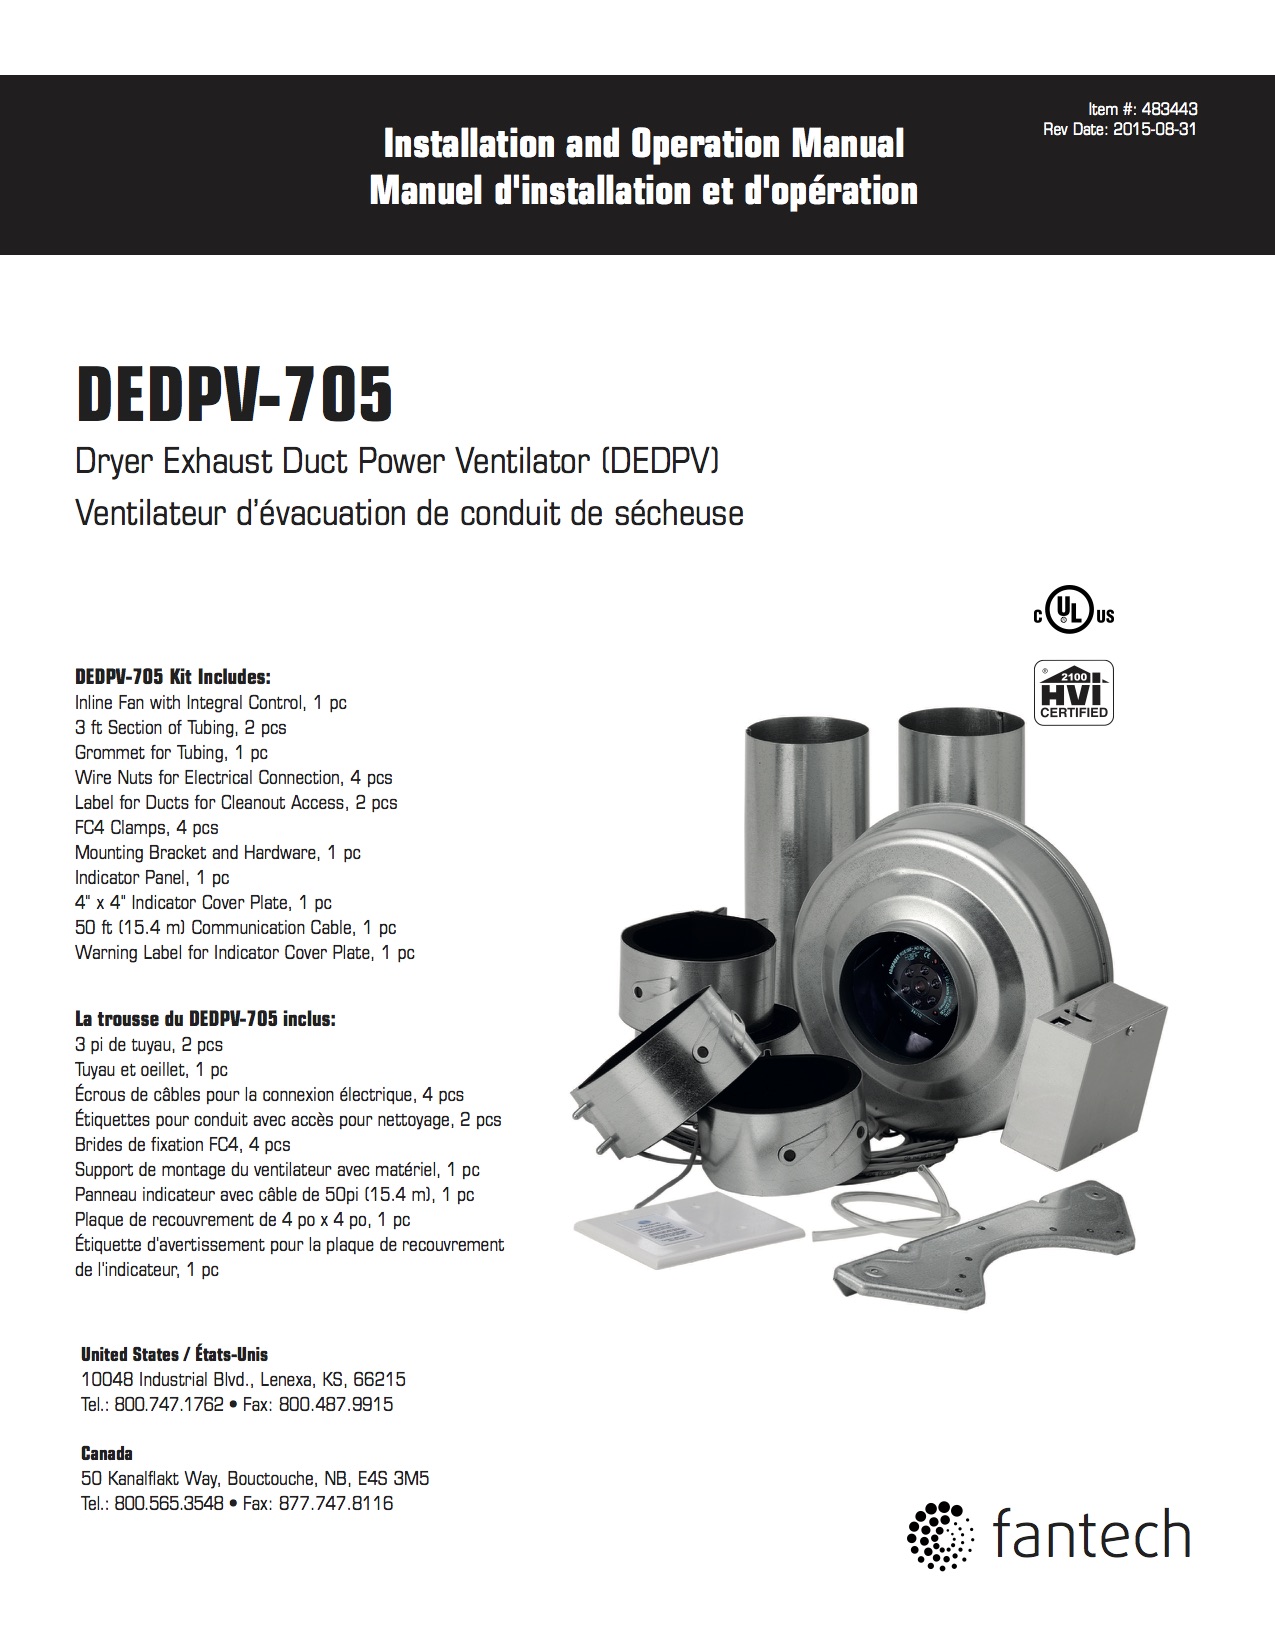 DPV22-2 DEDPV - Fans & accessories - Products - Fantech